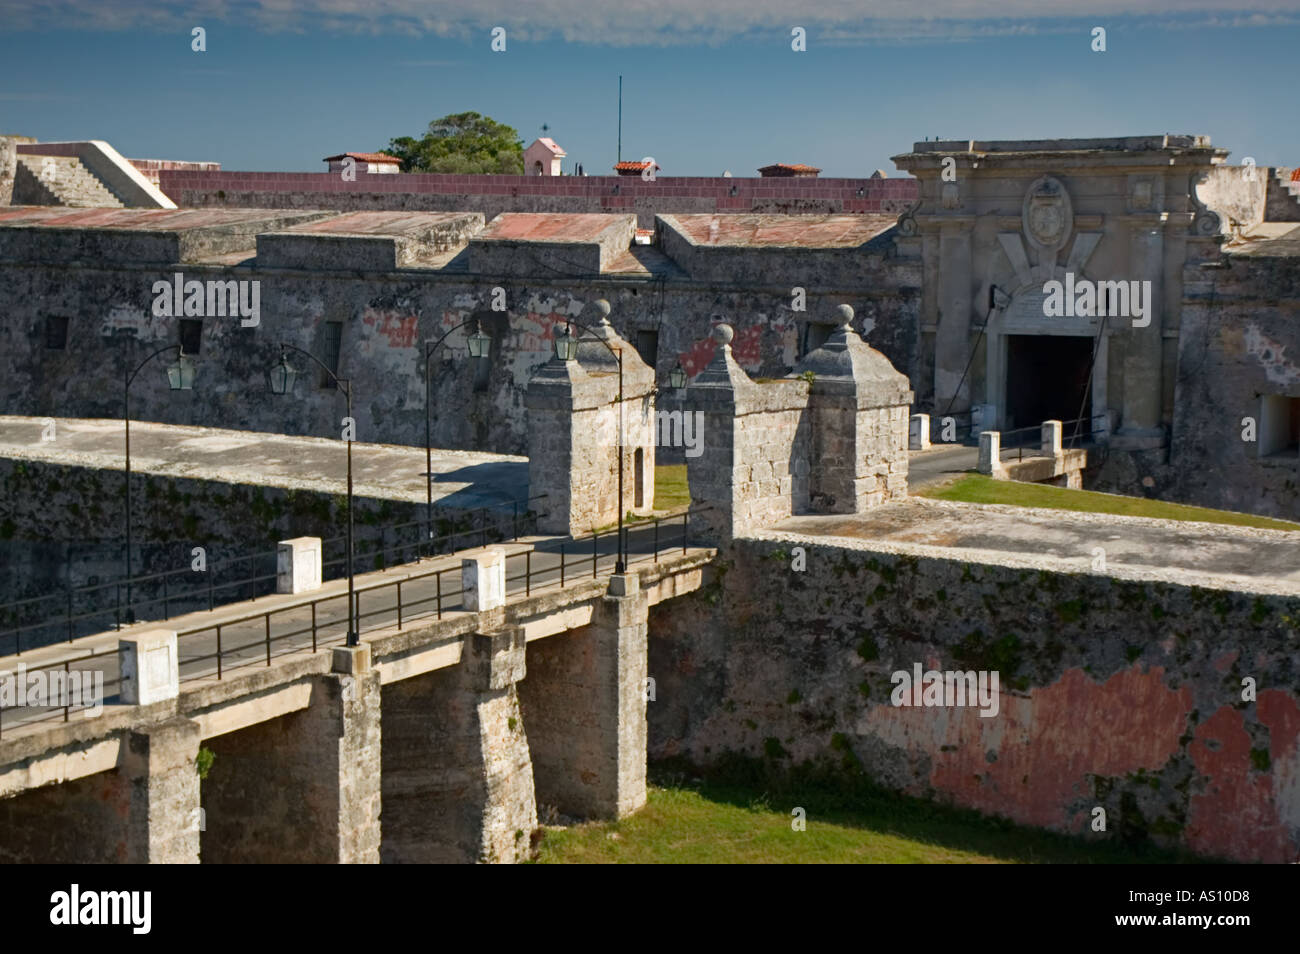 Fortaleza San Carlos de la Cabana, Parque Militar Morro-Cabana, Habana del Este, La Habana, Cuba, Greater Antilles, Caribbean Stock Photo